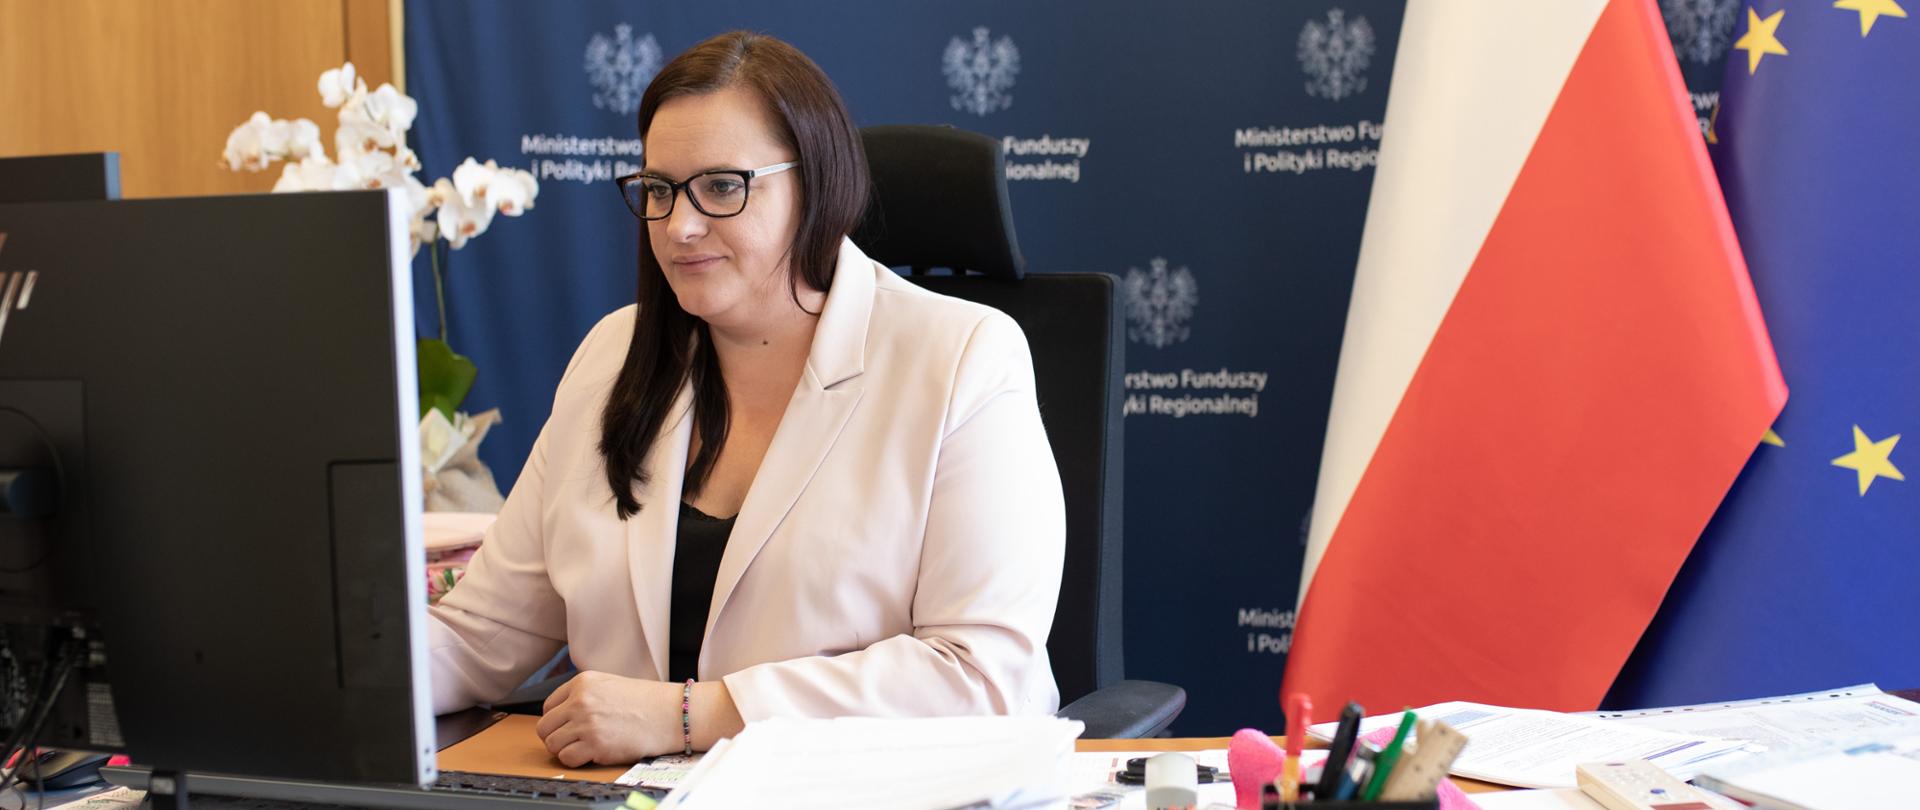 W gabinecie przy biurku przed monitorem siedzi wiceminister Małgorzata Jarosińska-Jedynak. Za nią ścianka reklamowa MFiPR oraz dwie flagi PL i UE.